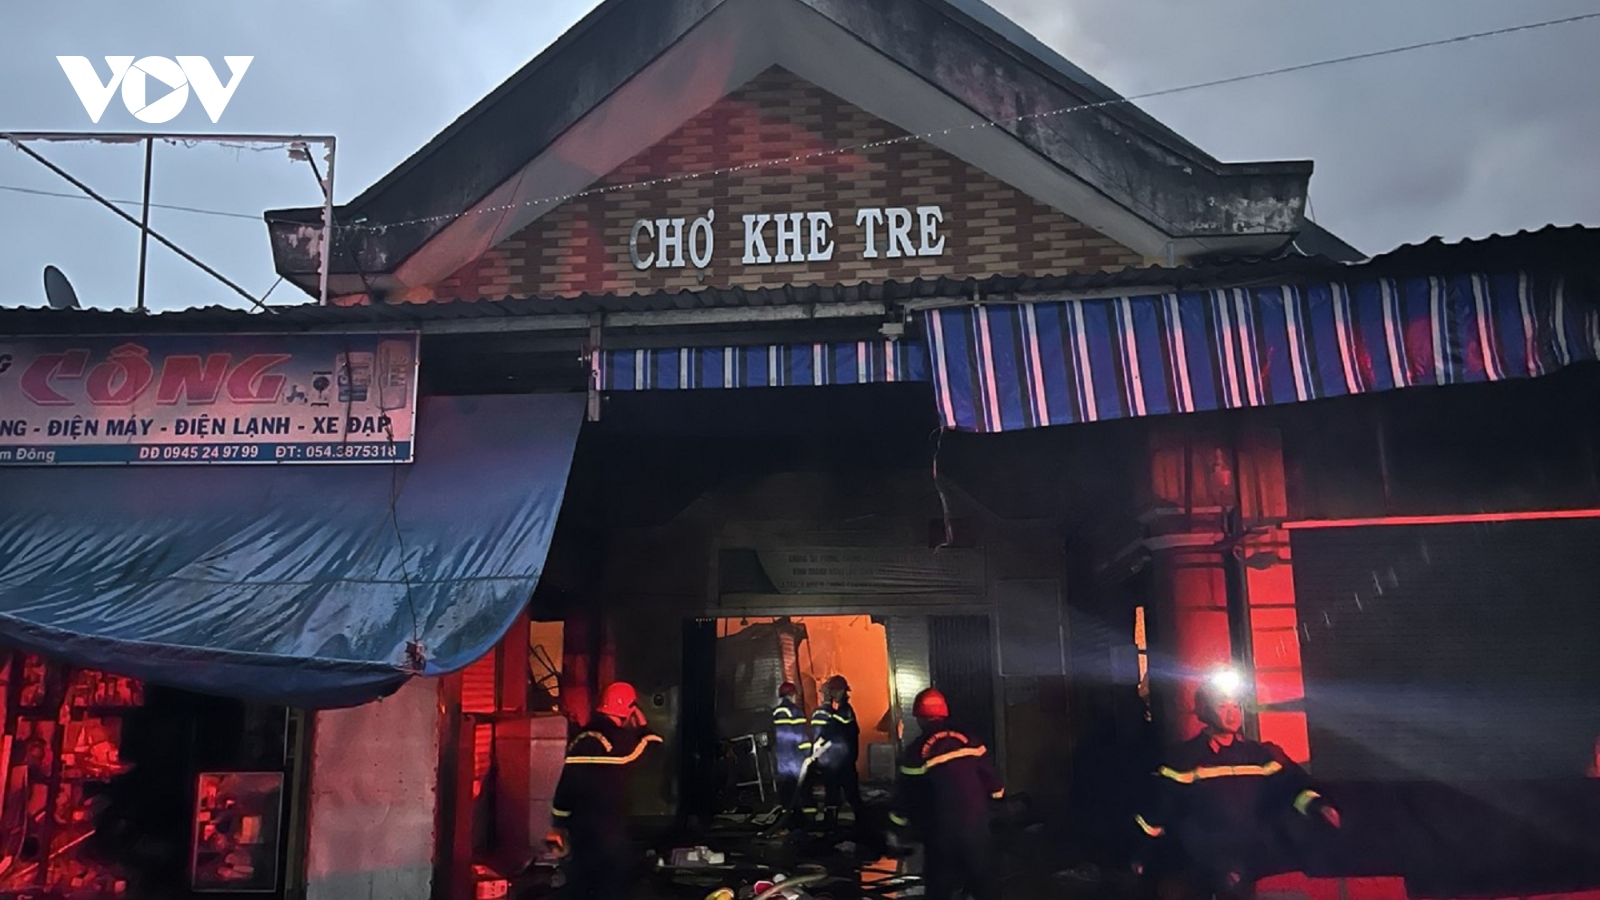 Thừa Thiên Huế trợ giúp các hộ kinh doanh bị thiệt hại do cháy chợ Khe Tre